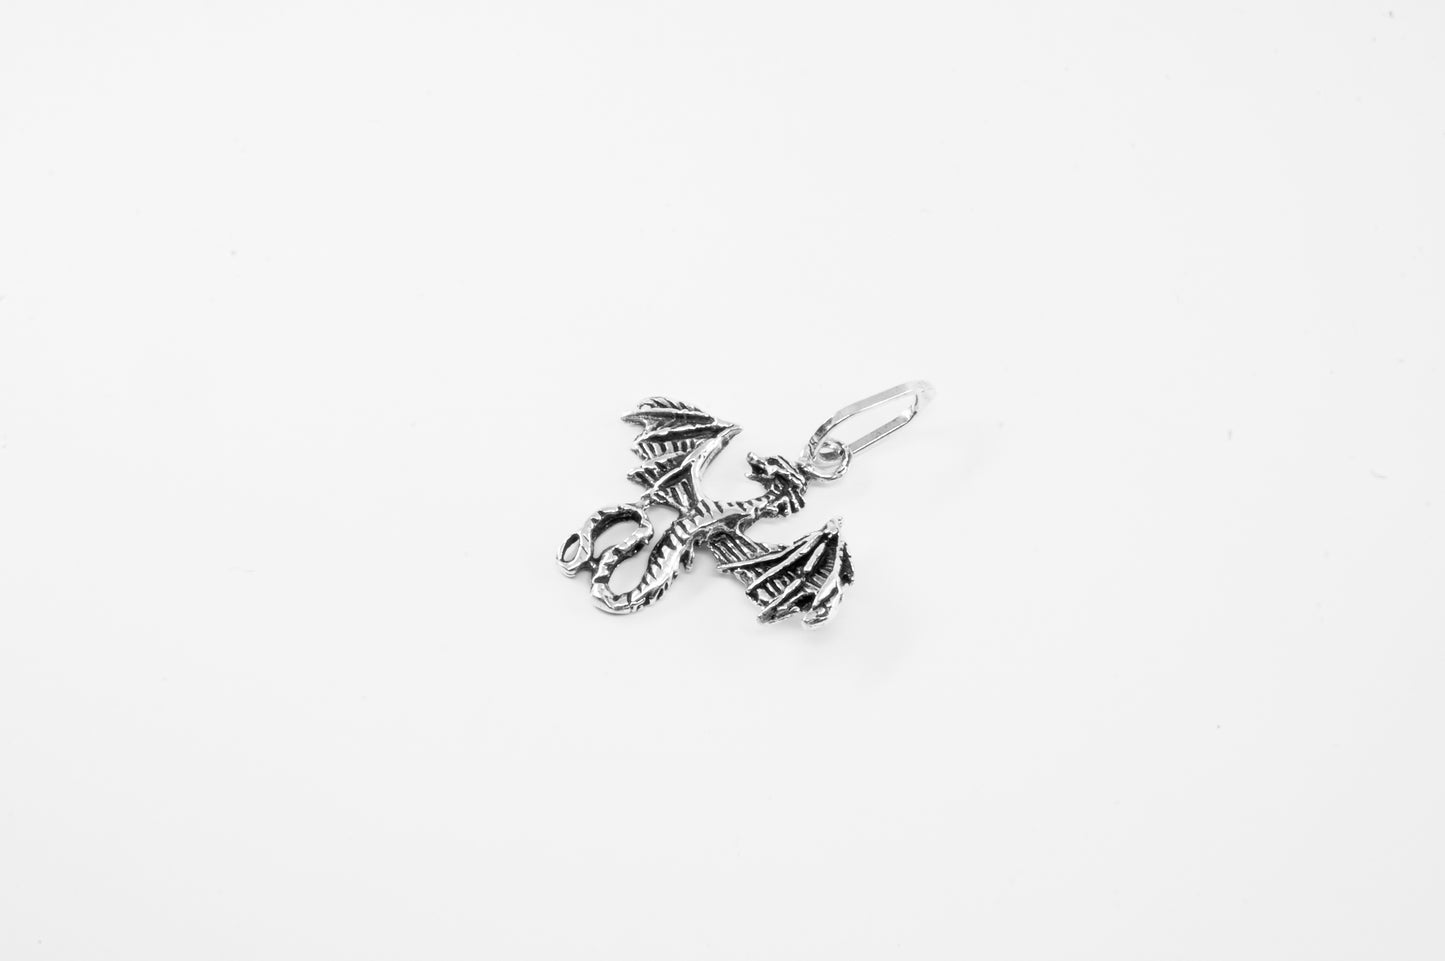 Dije plata solida 925, dragón al vuelo con alas abiertas (cadena incluída)